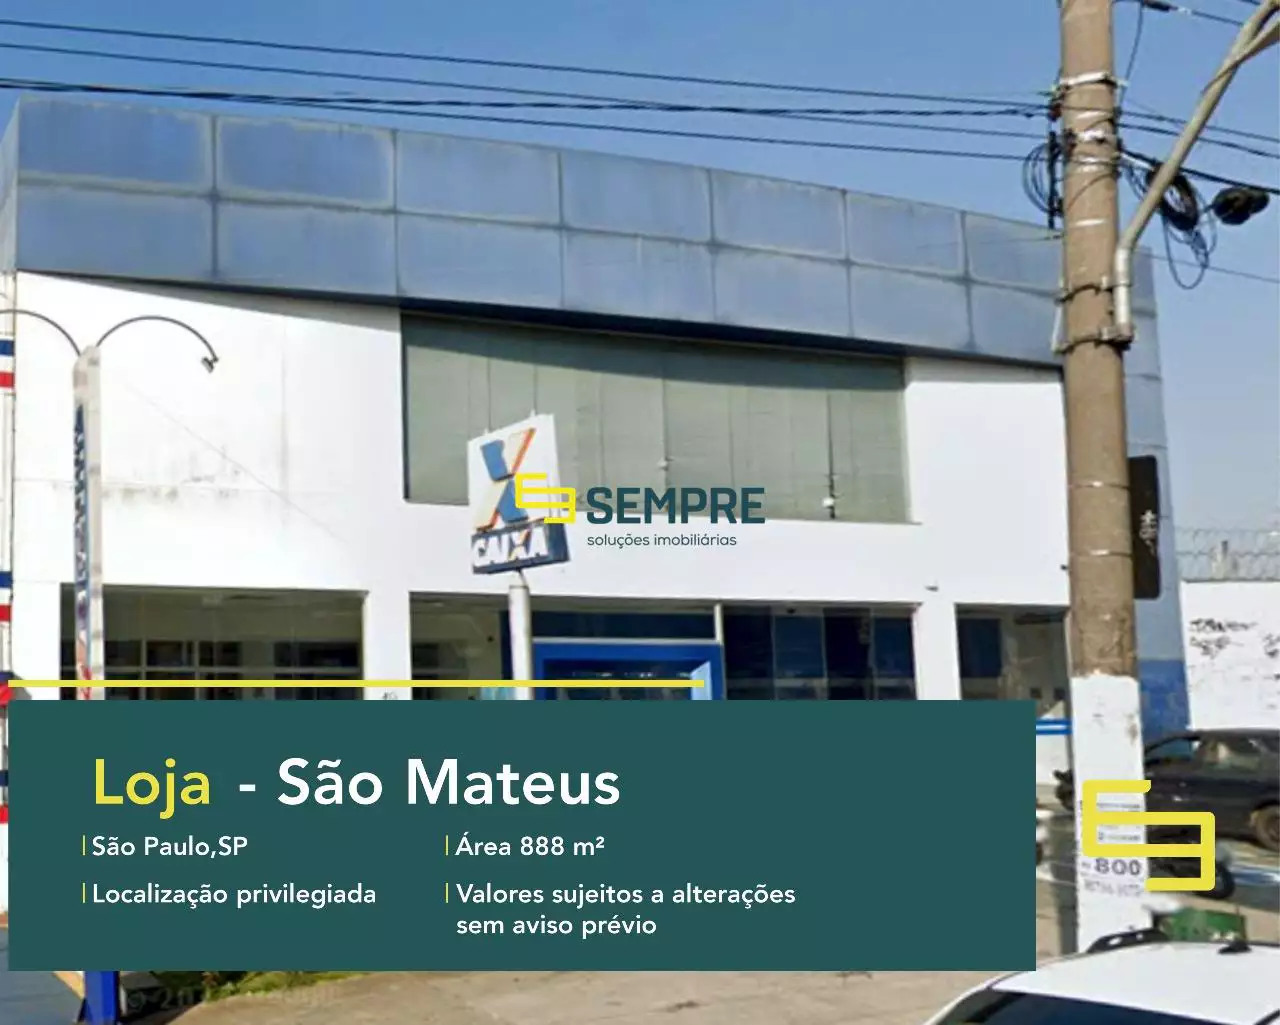 Loja para alugar em São Mateus em São Paulo, em excelente localização. O estabelecimento comercial conta com área de 888 m².